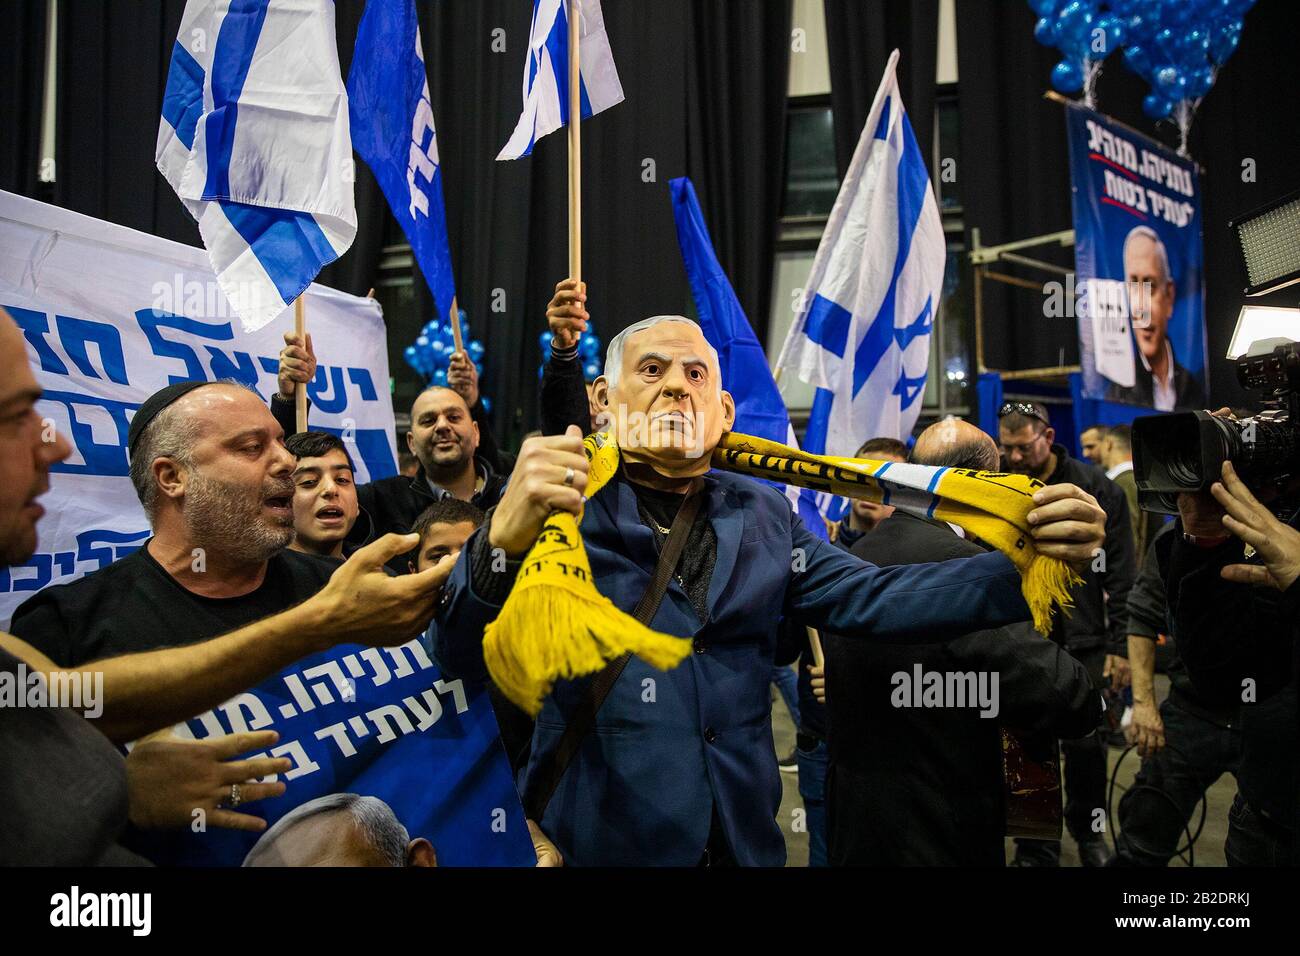 Tel Aviv, Israele. 02nd Mar, 2020. Un sostenitore del partito di Likud che indossa una maschera raffigurante il primo ministro israeliano Benjamin Netanyahu, celebra con gli altri dopo i sondaggi di uscita delle elezioni parlamentari israeliane, presso la sede del partito. Il partito di Likud del primo ministro israeliano Benjamin Netanyahu ha vinto il maggior numero di seggi (36-37) nelle elezioni parlamentari, ma il suo blocco di destra e di partito religioso non ha maggioranza nel parlamento del paese a 120 posti, secondo i sondaggi d'uscita. Credit: Ilia Yefimovic/Dpa/Alamy Live News Foto Stock